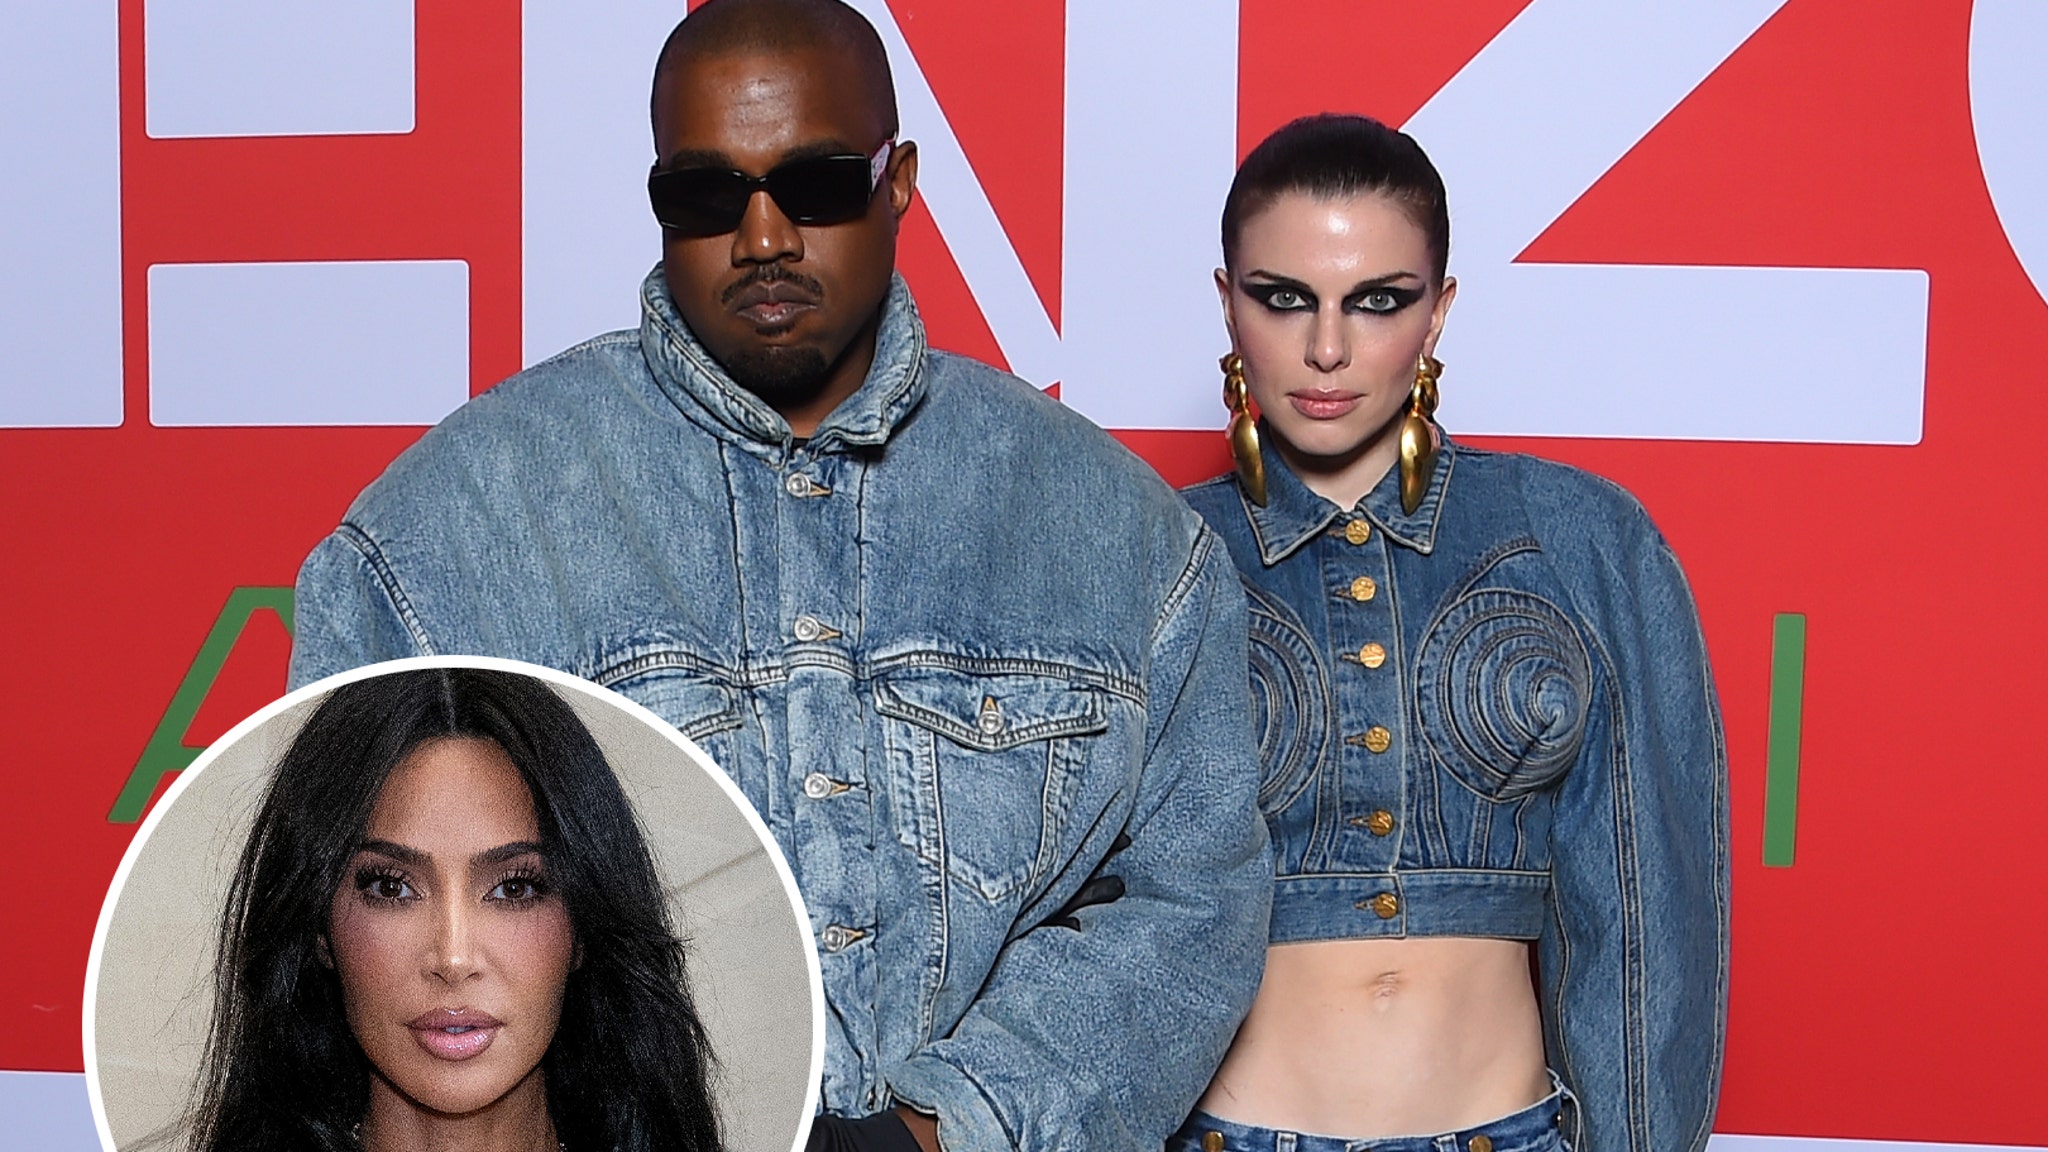 Julia Fox dit que Kanye West l’a traitée comme une “petite marionnette”, la transformant en arme contre l’ex Kim Kardashian